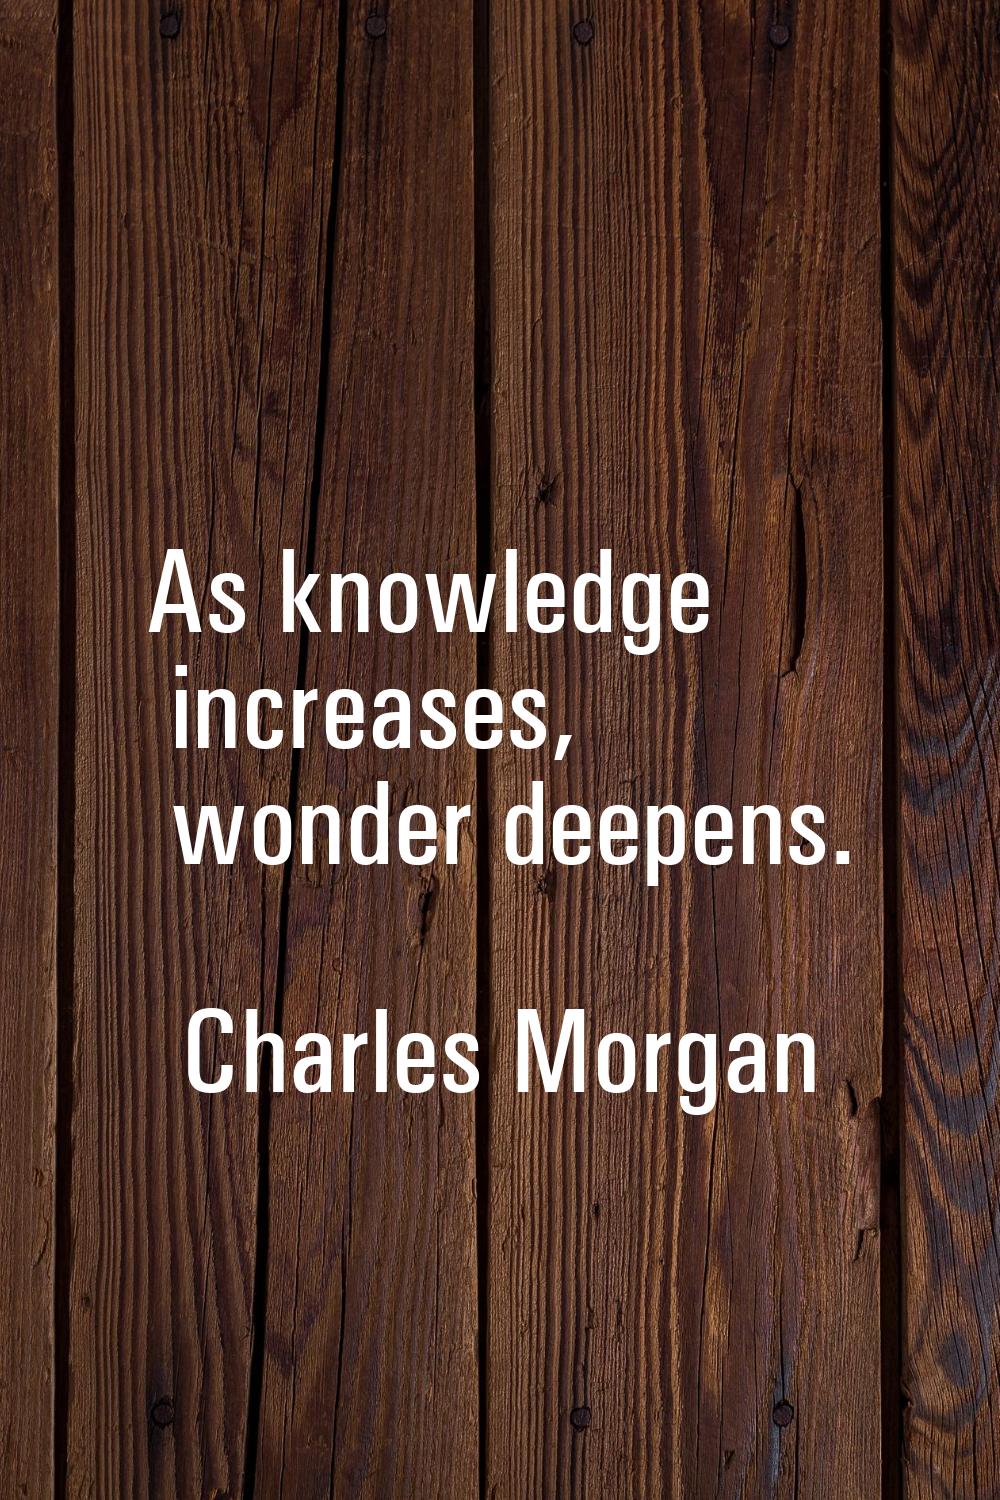 As knowledge increases, wonder deepens.